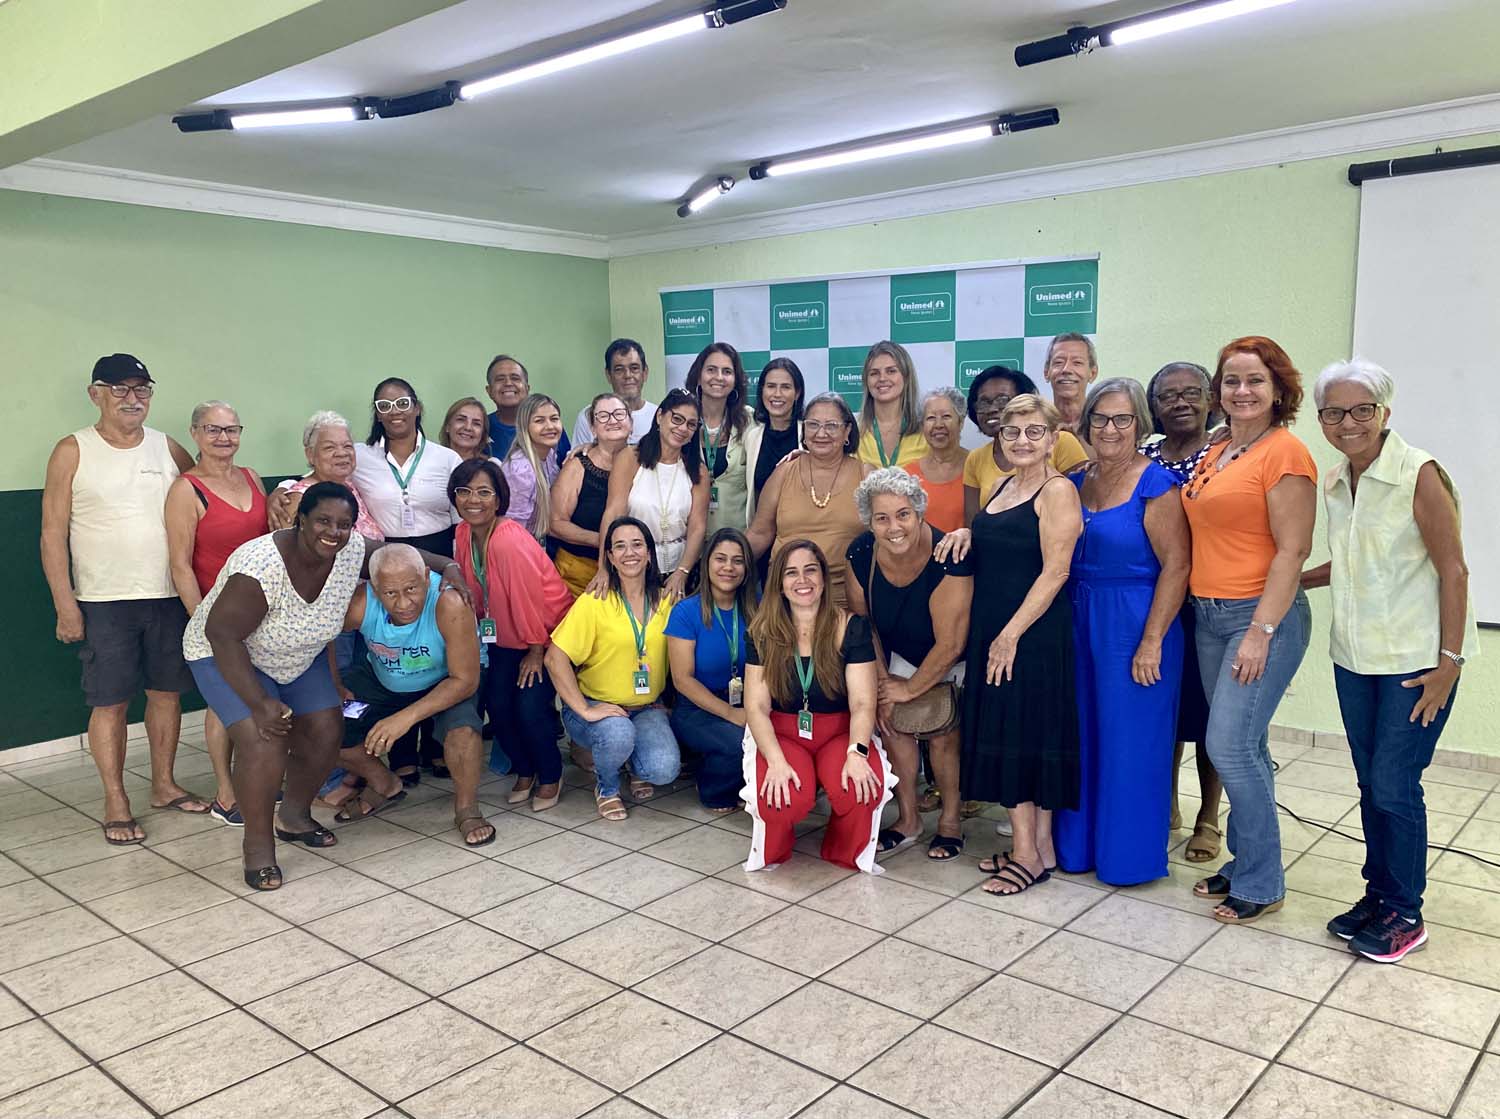 Saúde dos rins é tema de evento promovido pela Unimed Nova Iguaçu